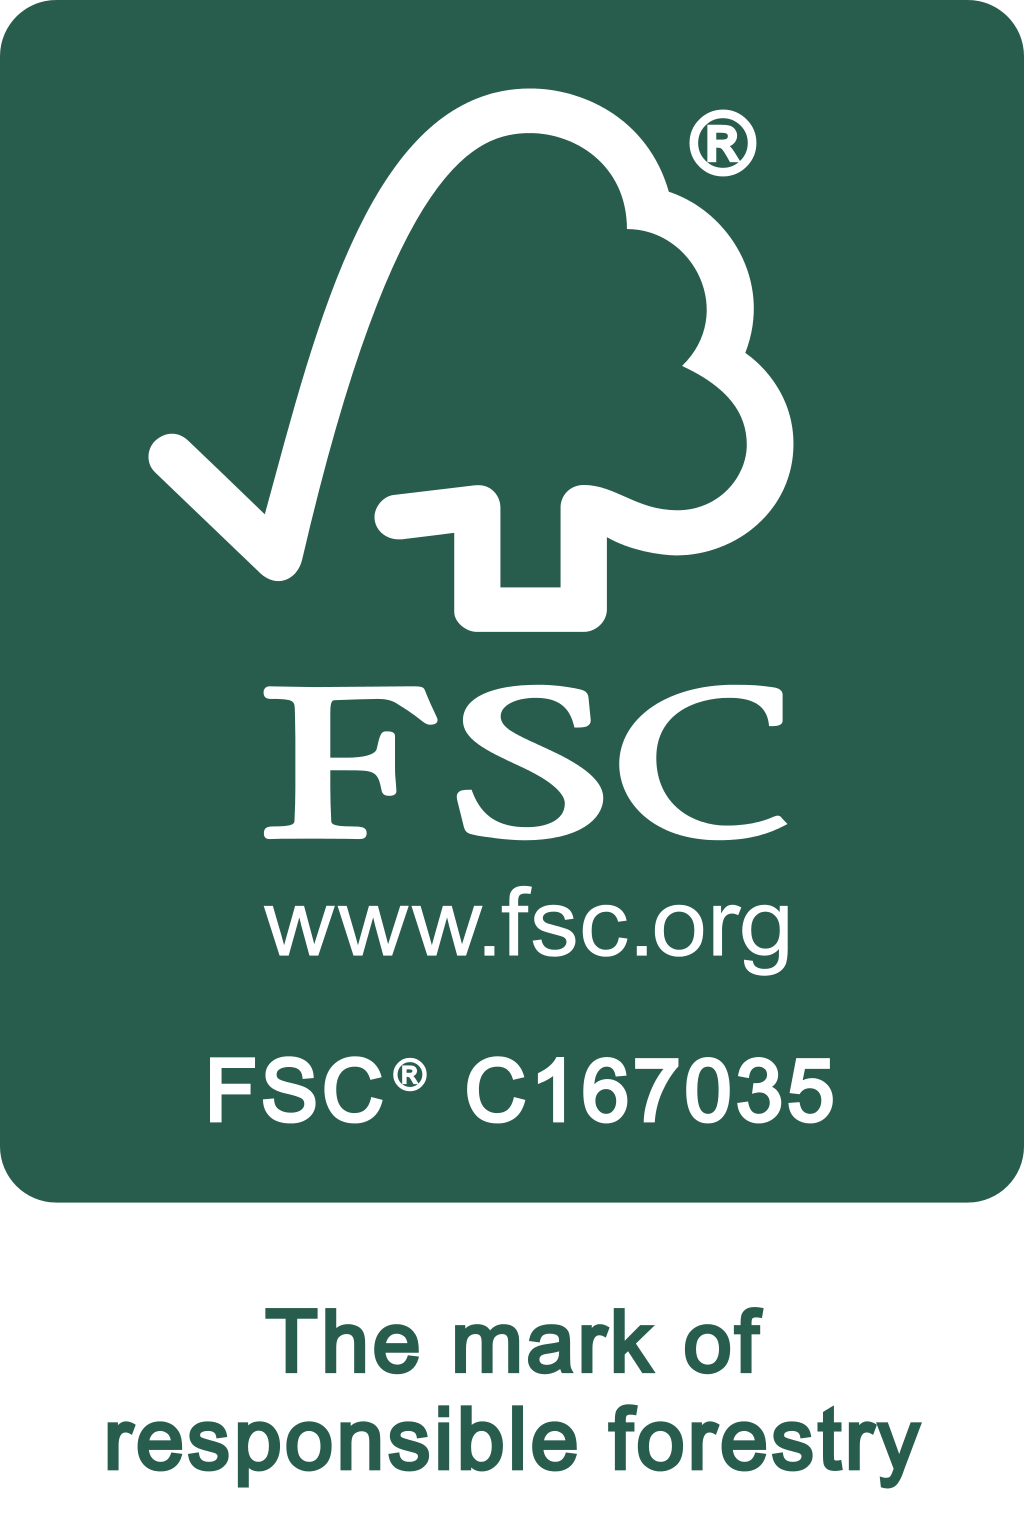 Sello FSC cadena de custodia